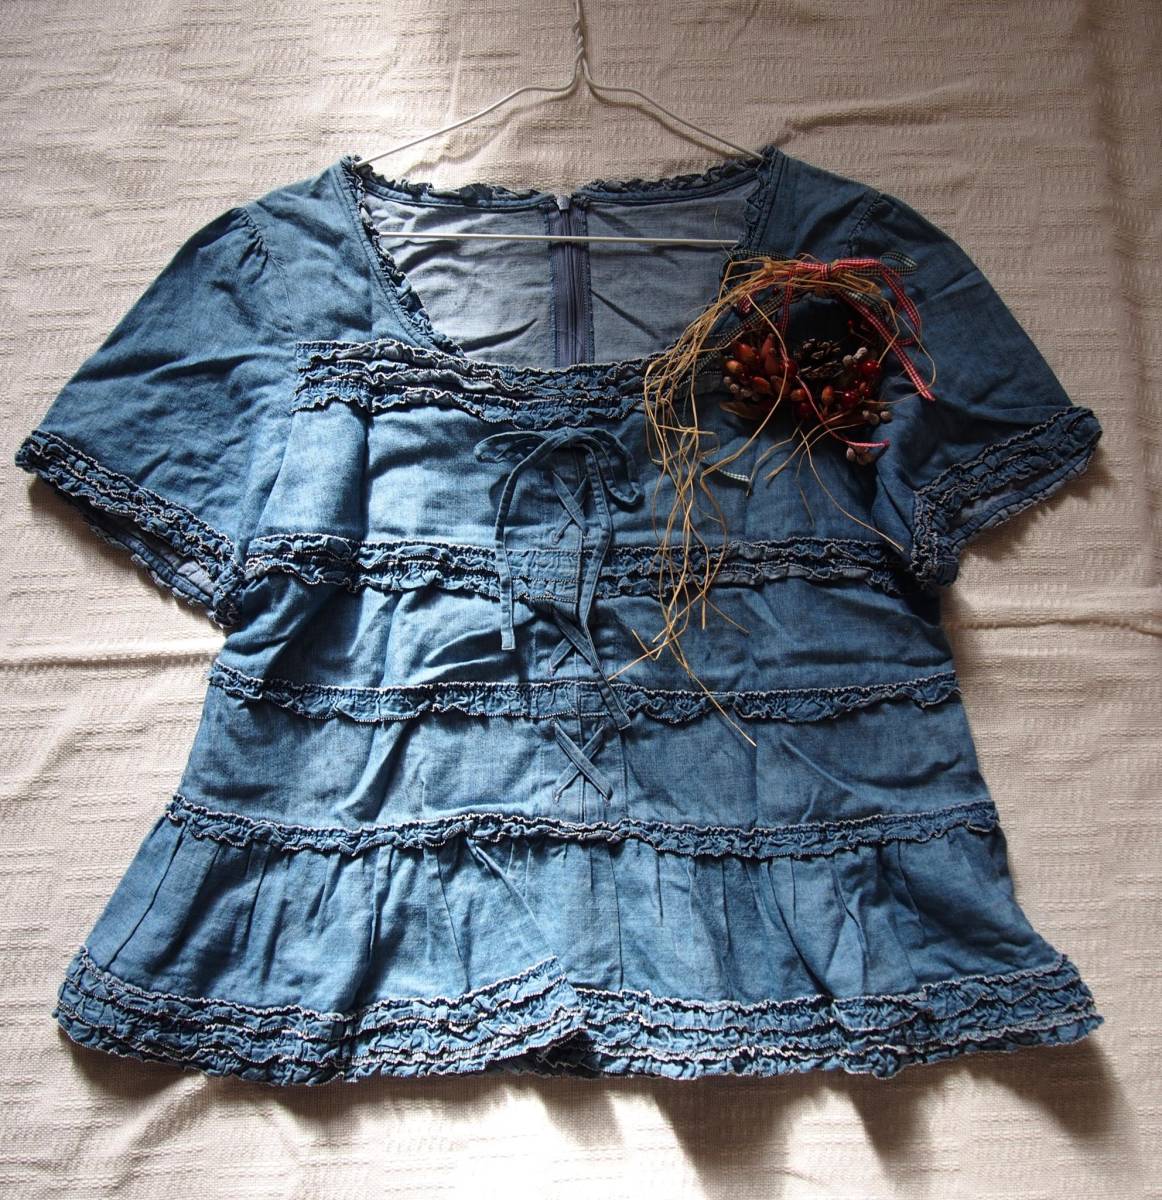 ピンクハウス 定番の冬ギフト 新しいコレクション ダンガリー編み上げ半袖ブラウス